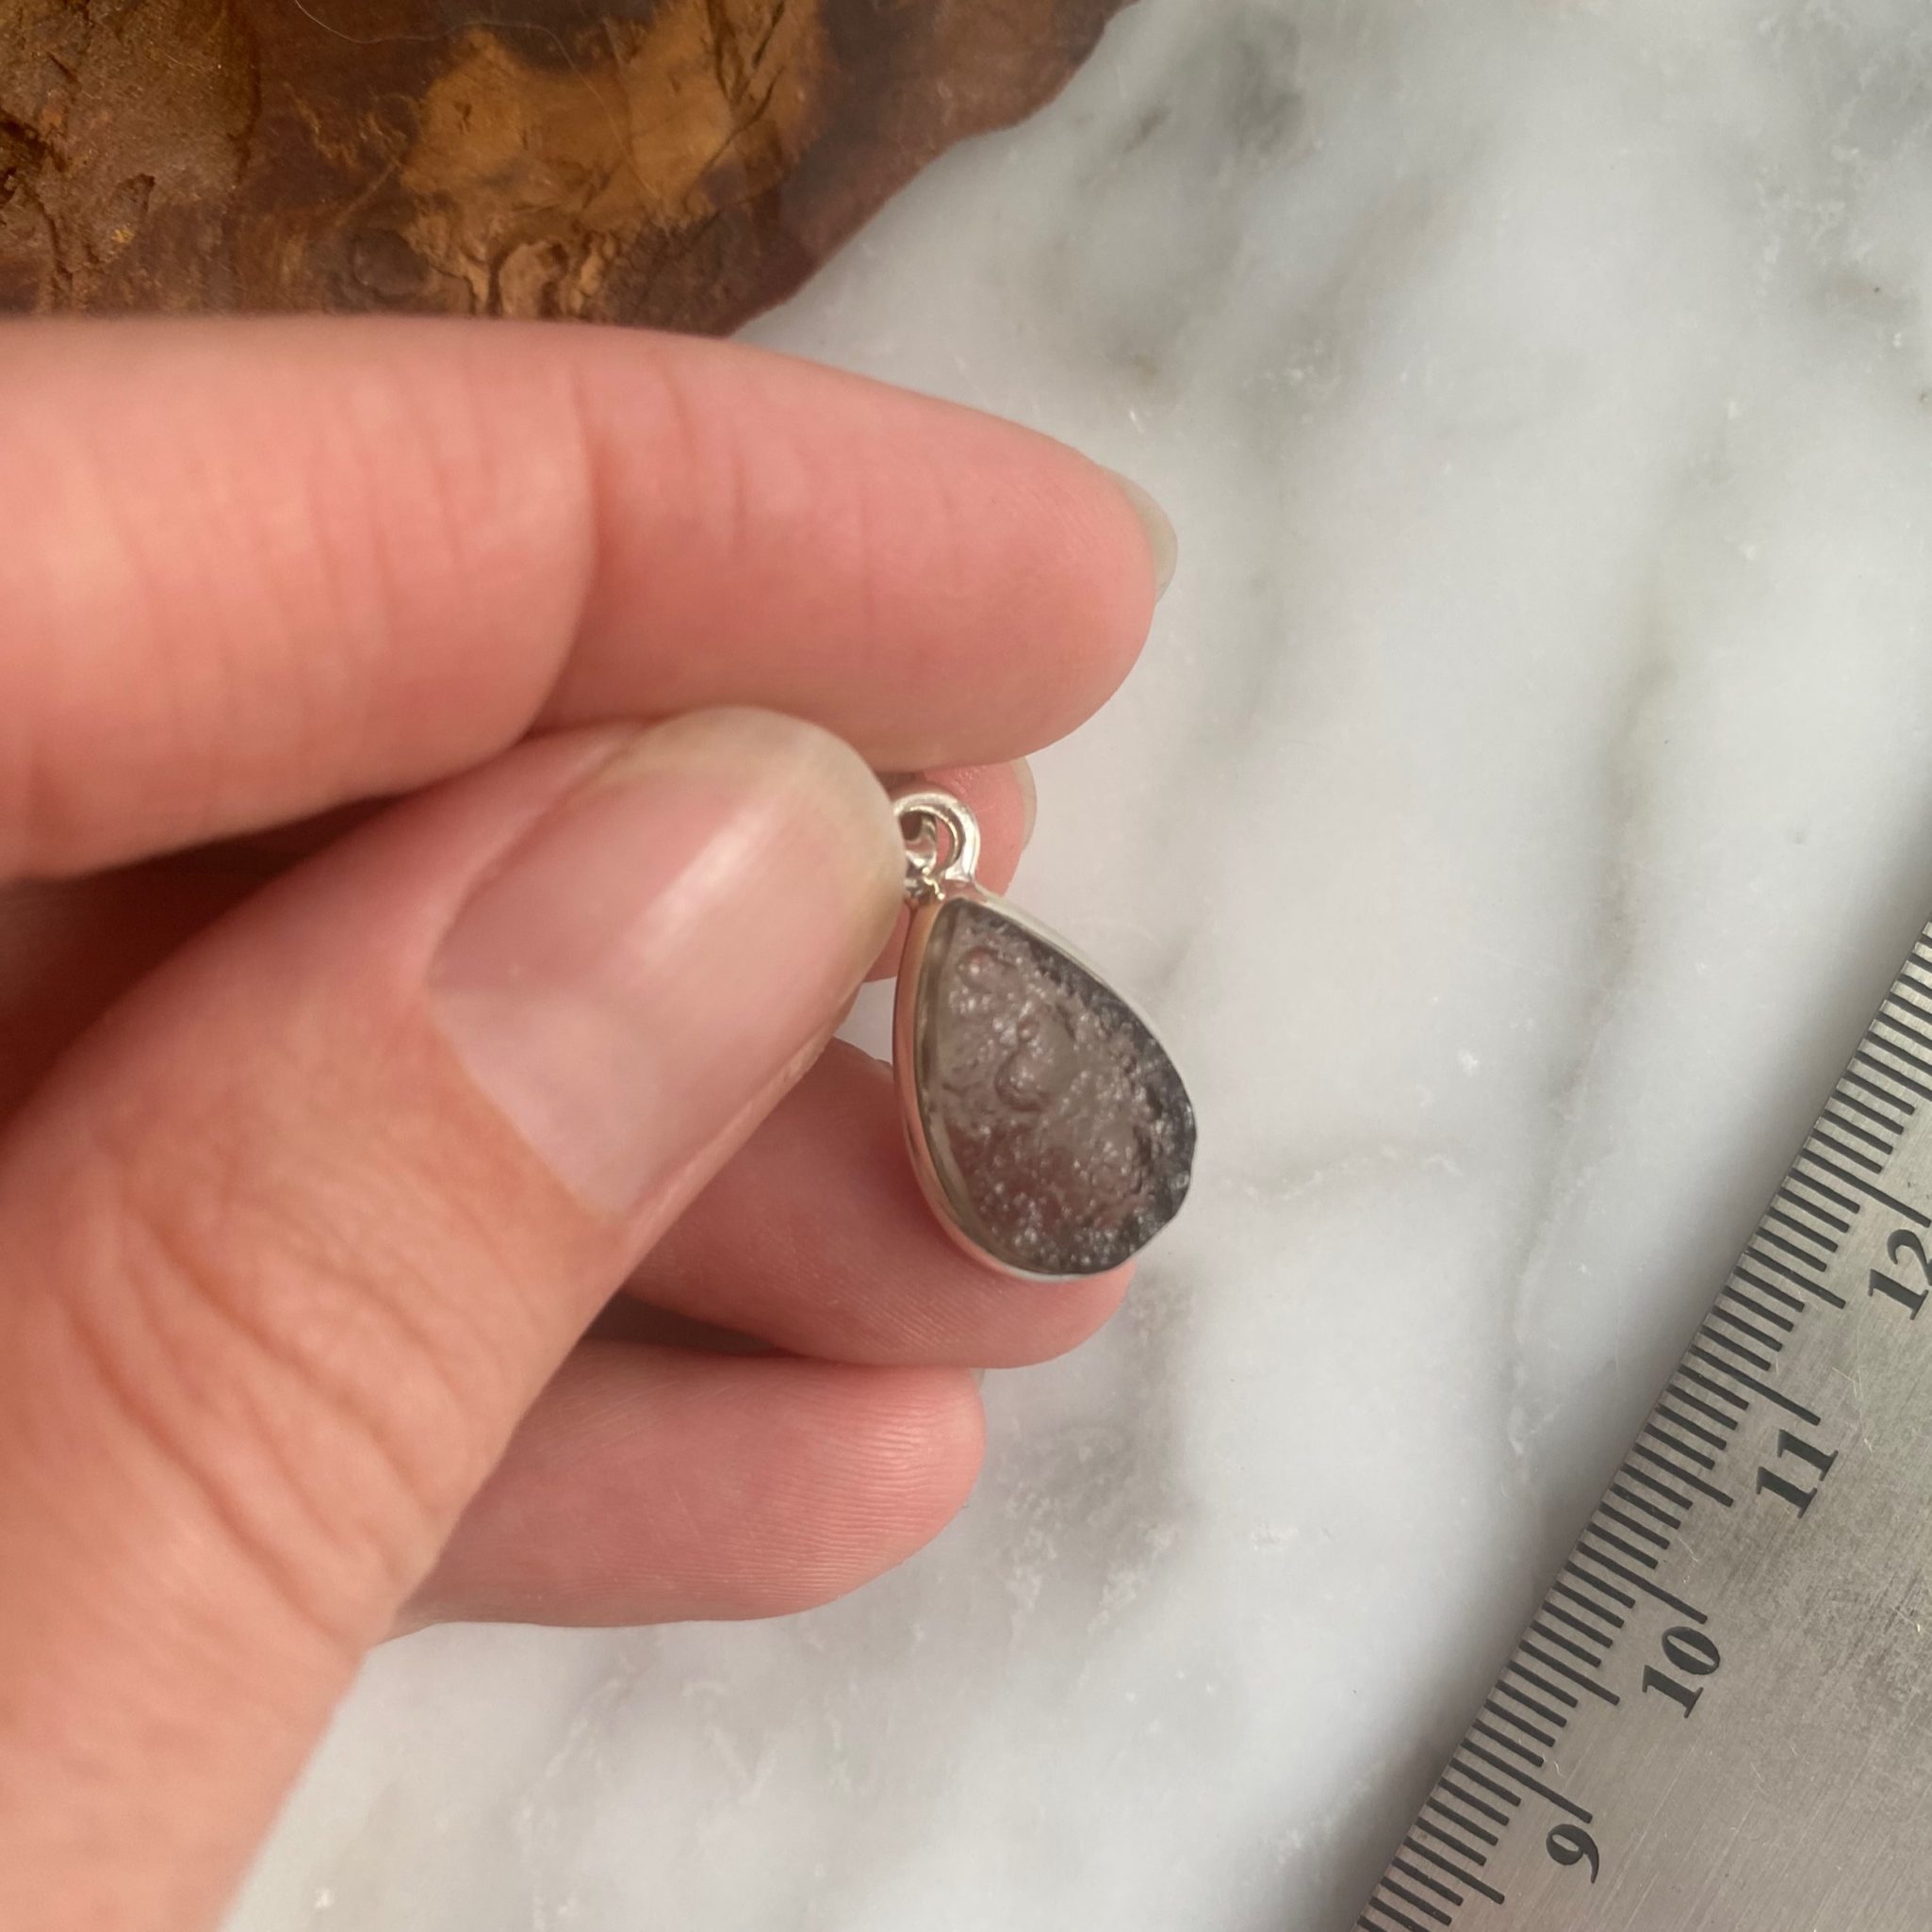 Agni Manitite Sterling Silver Pendant - Pendentif d'Agni Manitite en Argent Sterling